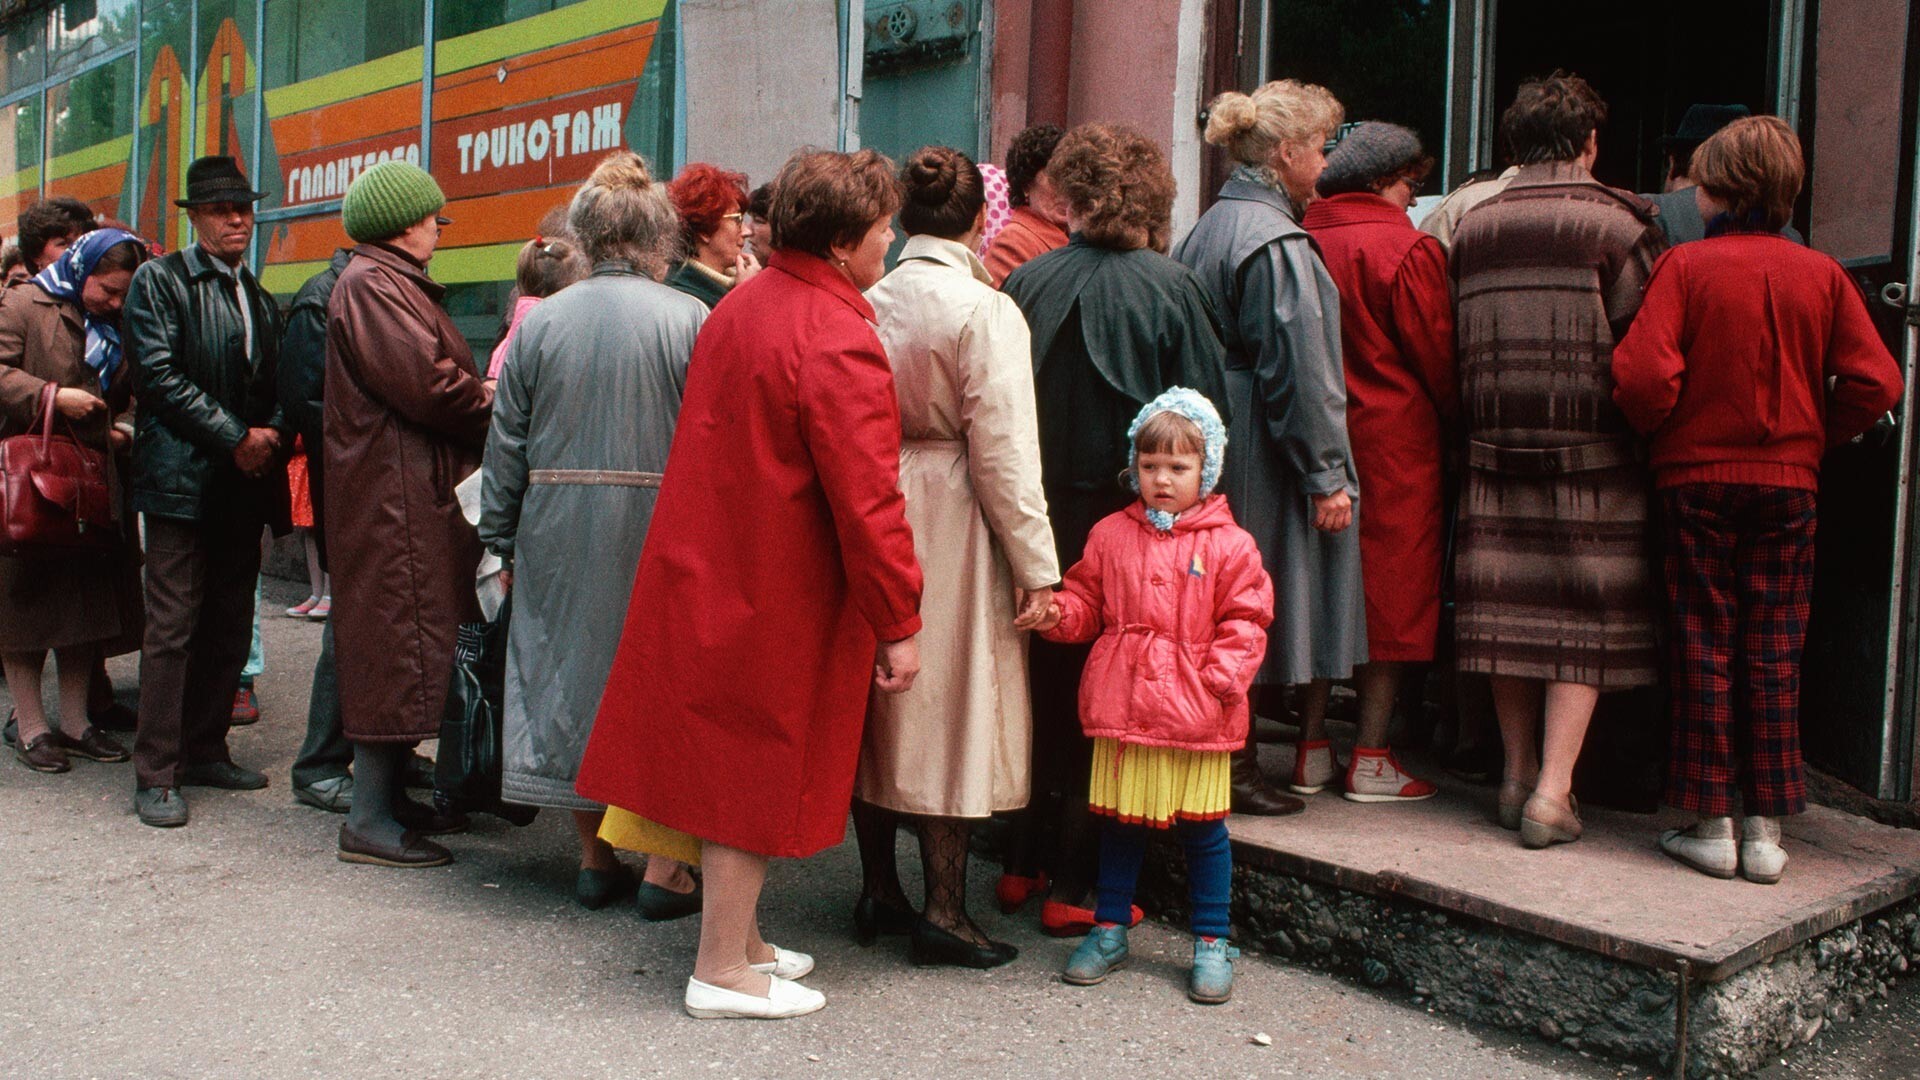 Siberianos haciendo cola frente a una tienda.
